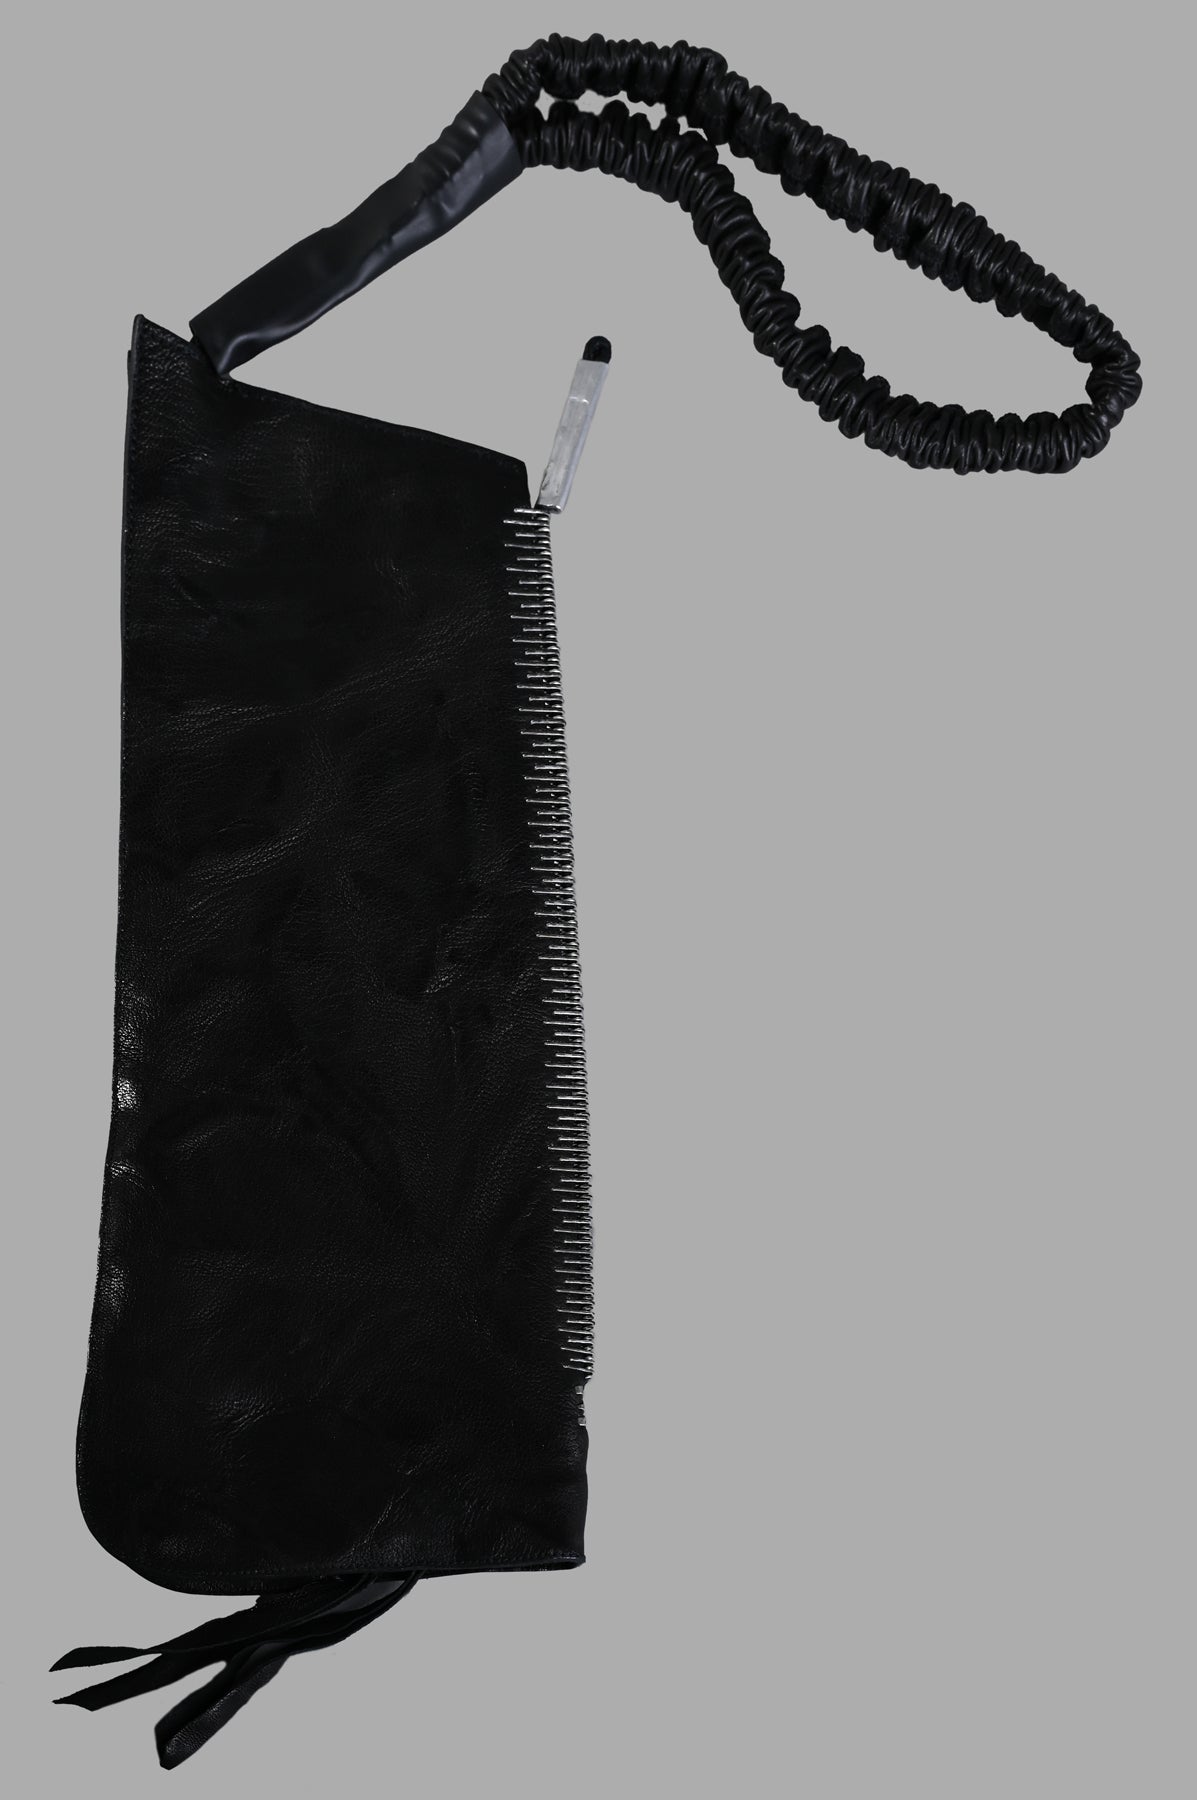 Spine-detail Bag